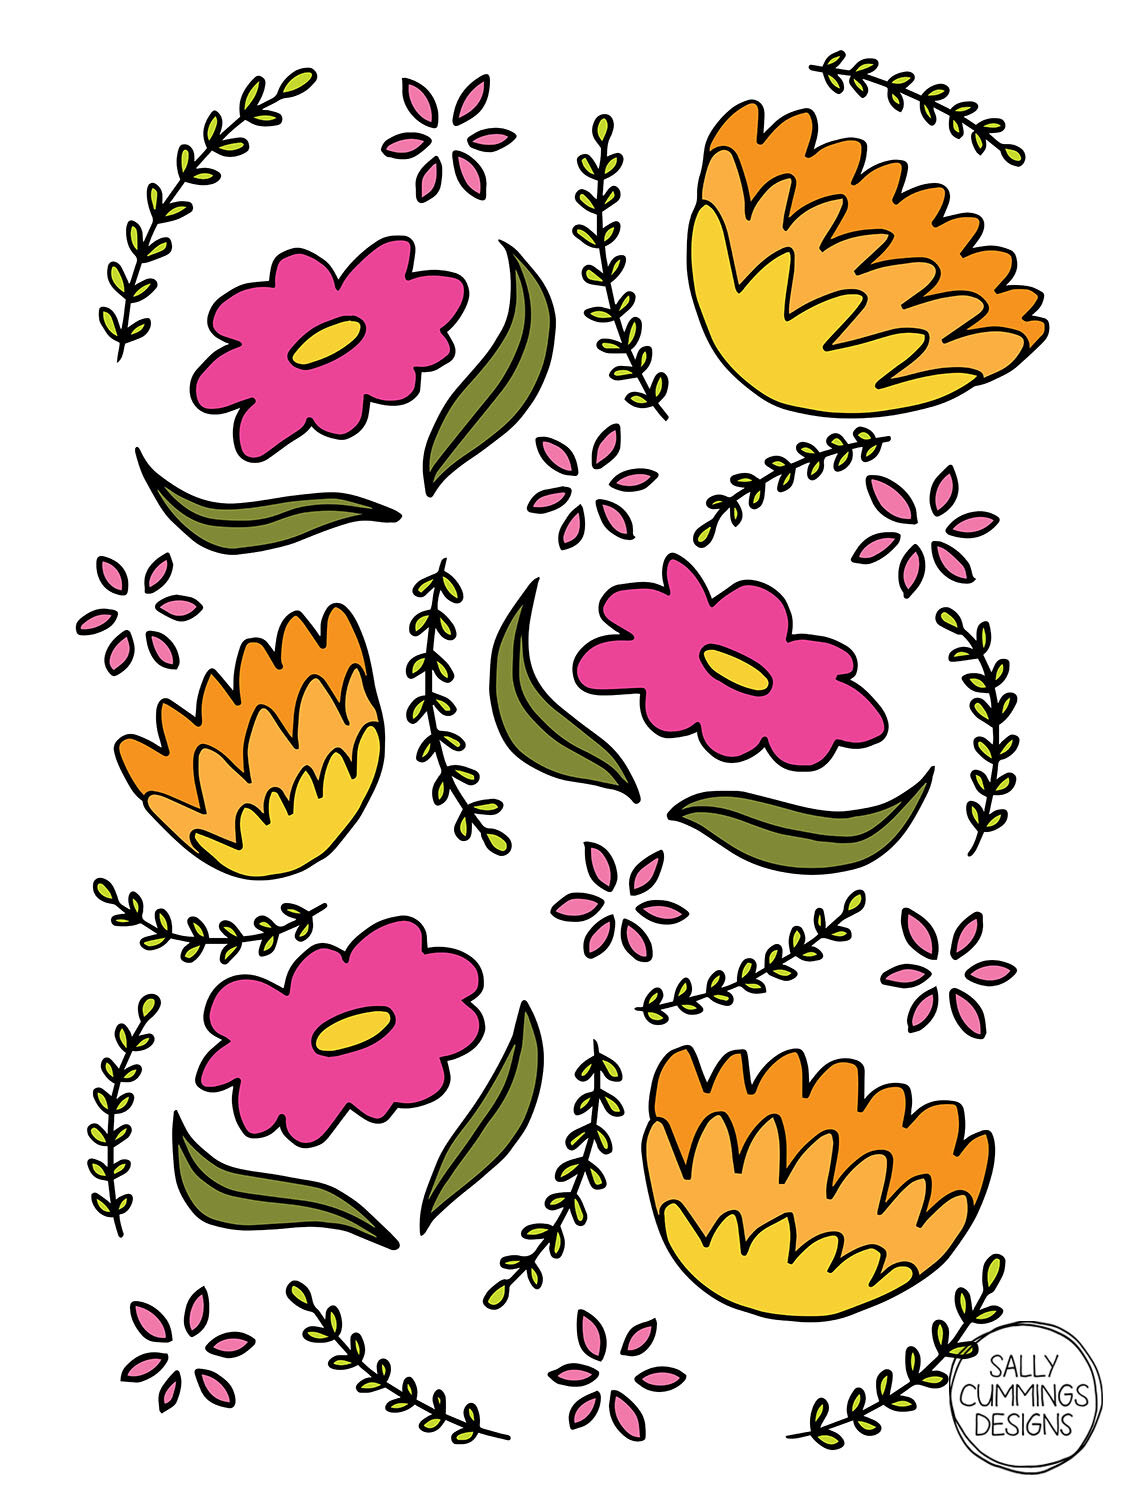 Sally Cummings Designs - May Flowers